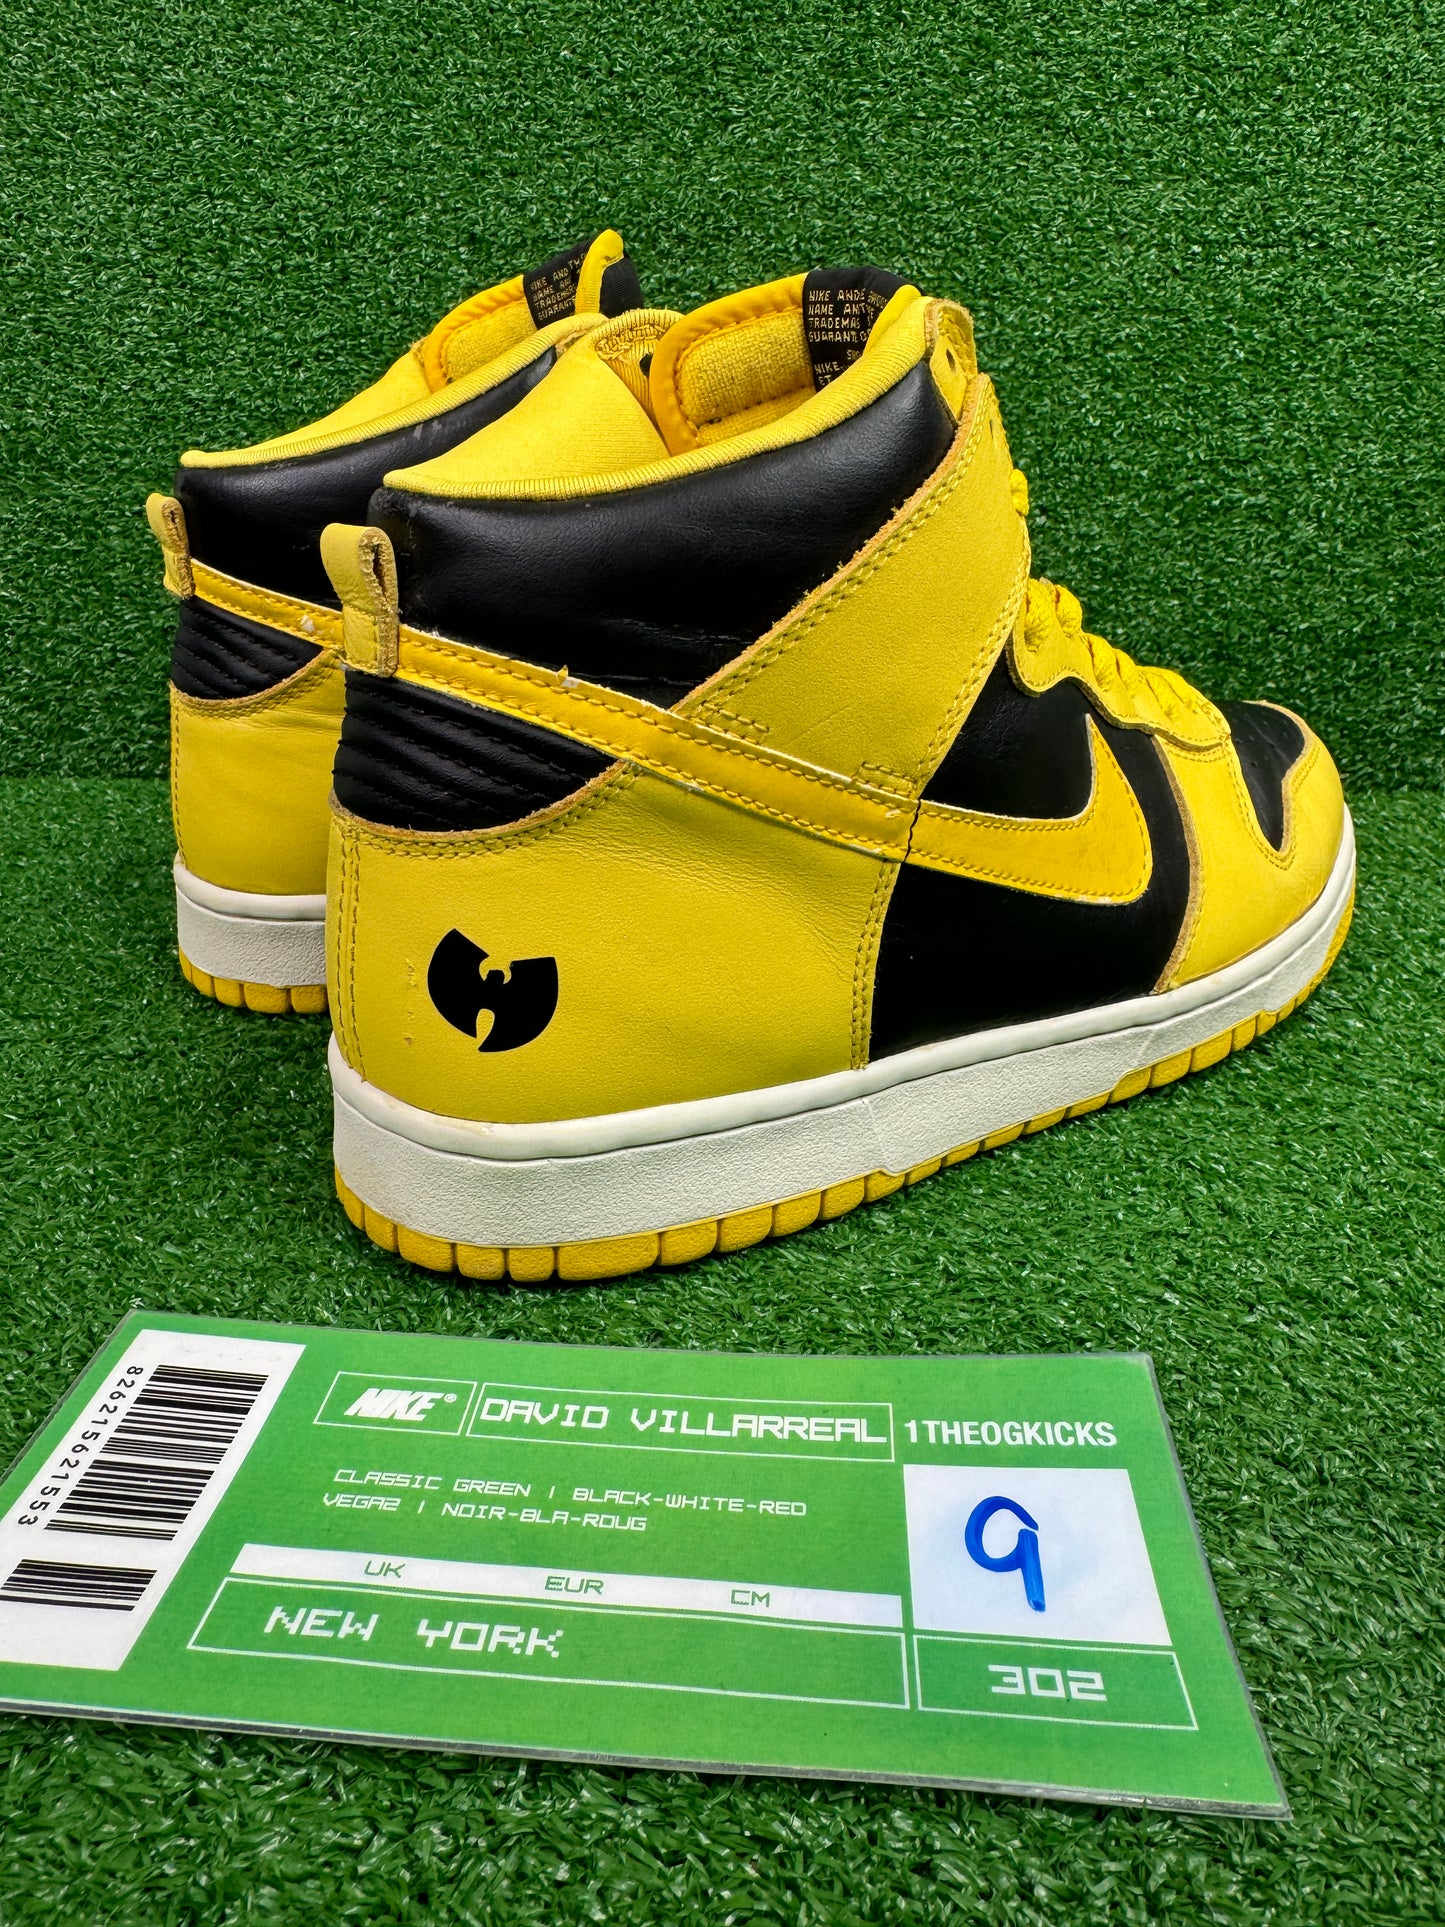 Nike Dunk Hi Wu-Tang Custom’s 1999 - Size 9